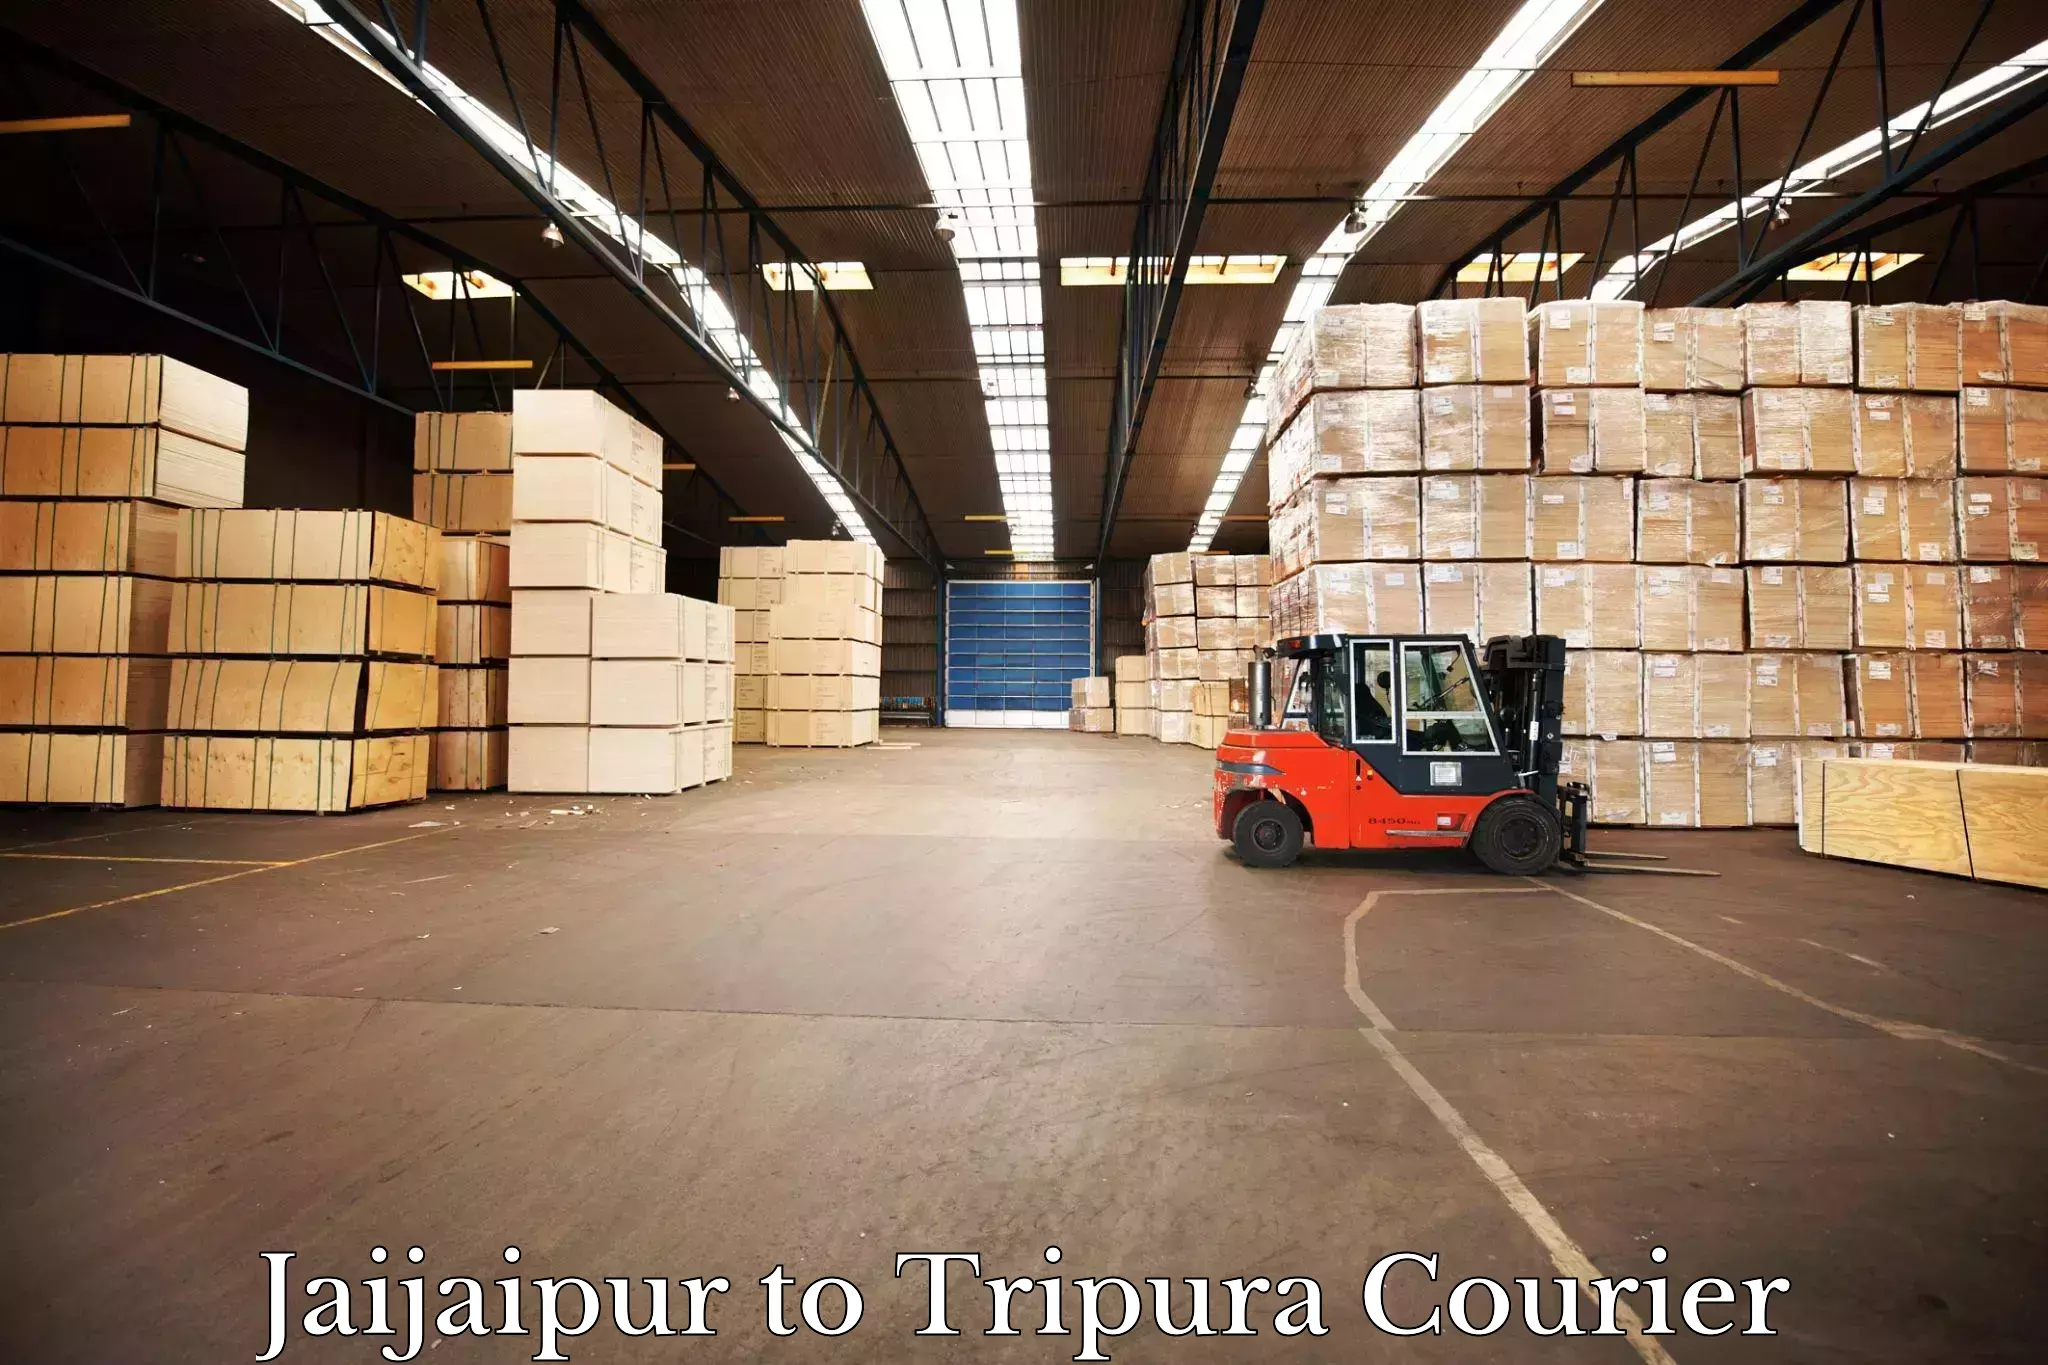 Courier service innovation Jaijaipur to Tripura